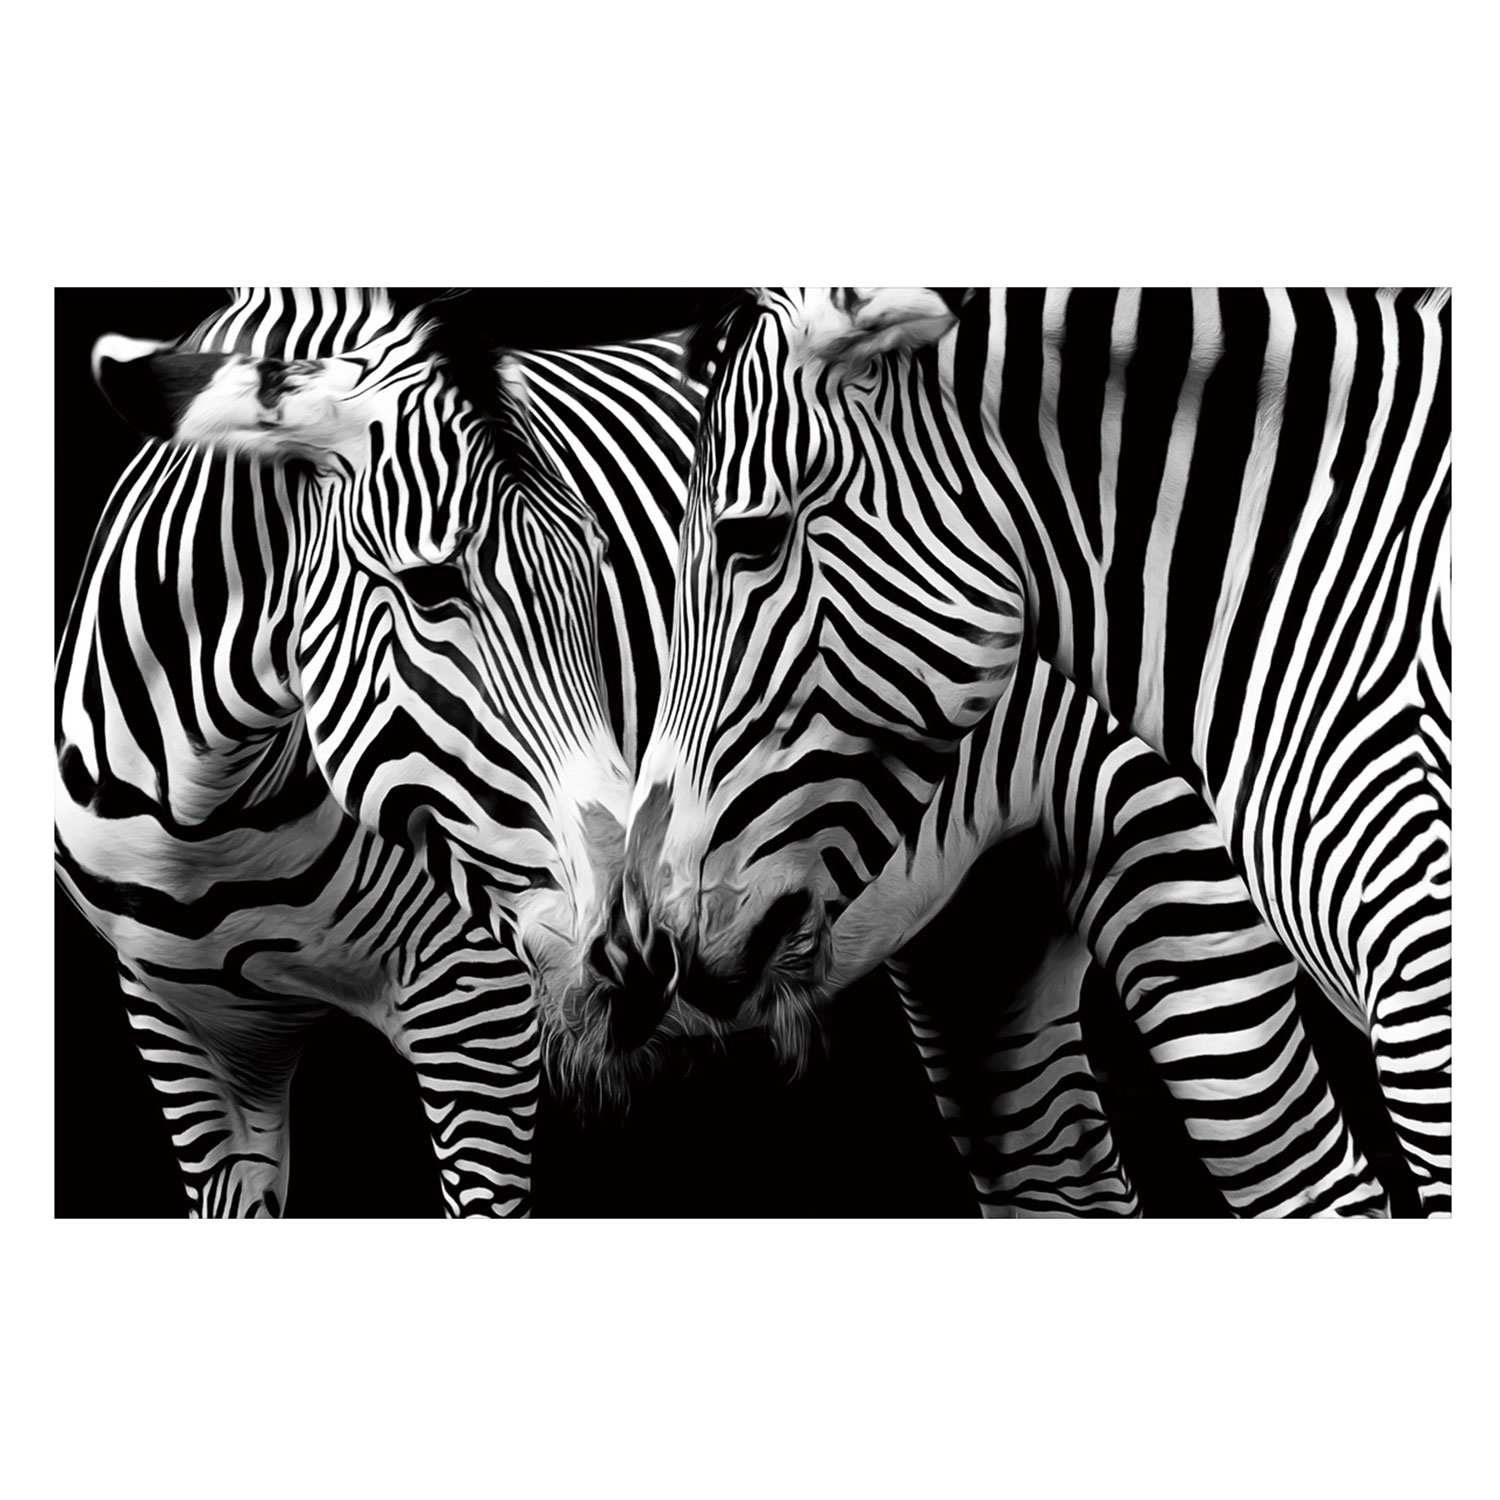 Zebras in Black & White – Tempered Glass Print – USA Acrylic – Miami Lakes